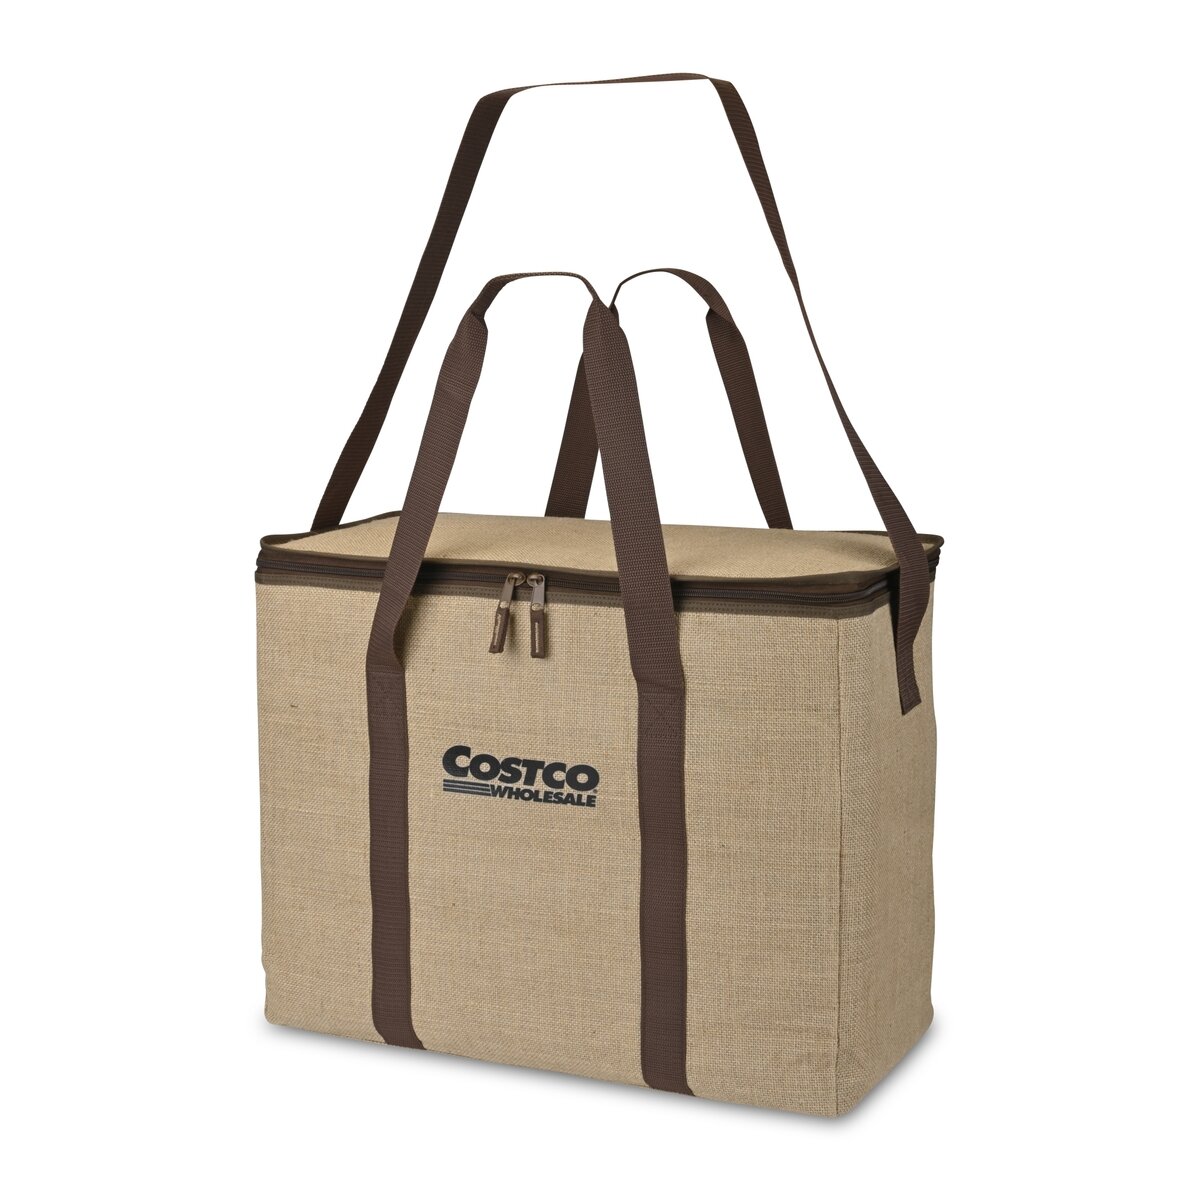 コストコ サスティナブル ジュート クーラーバッグ (60L, 45L, ポケットバッグ) | Costco Japan